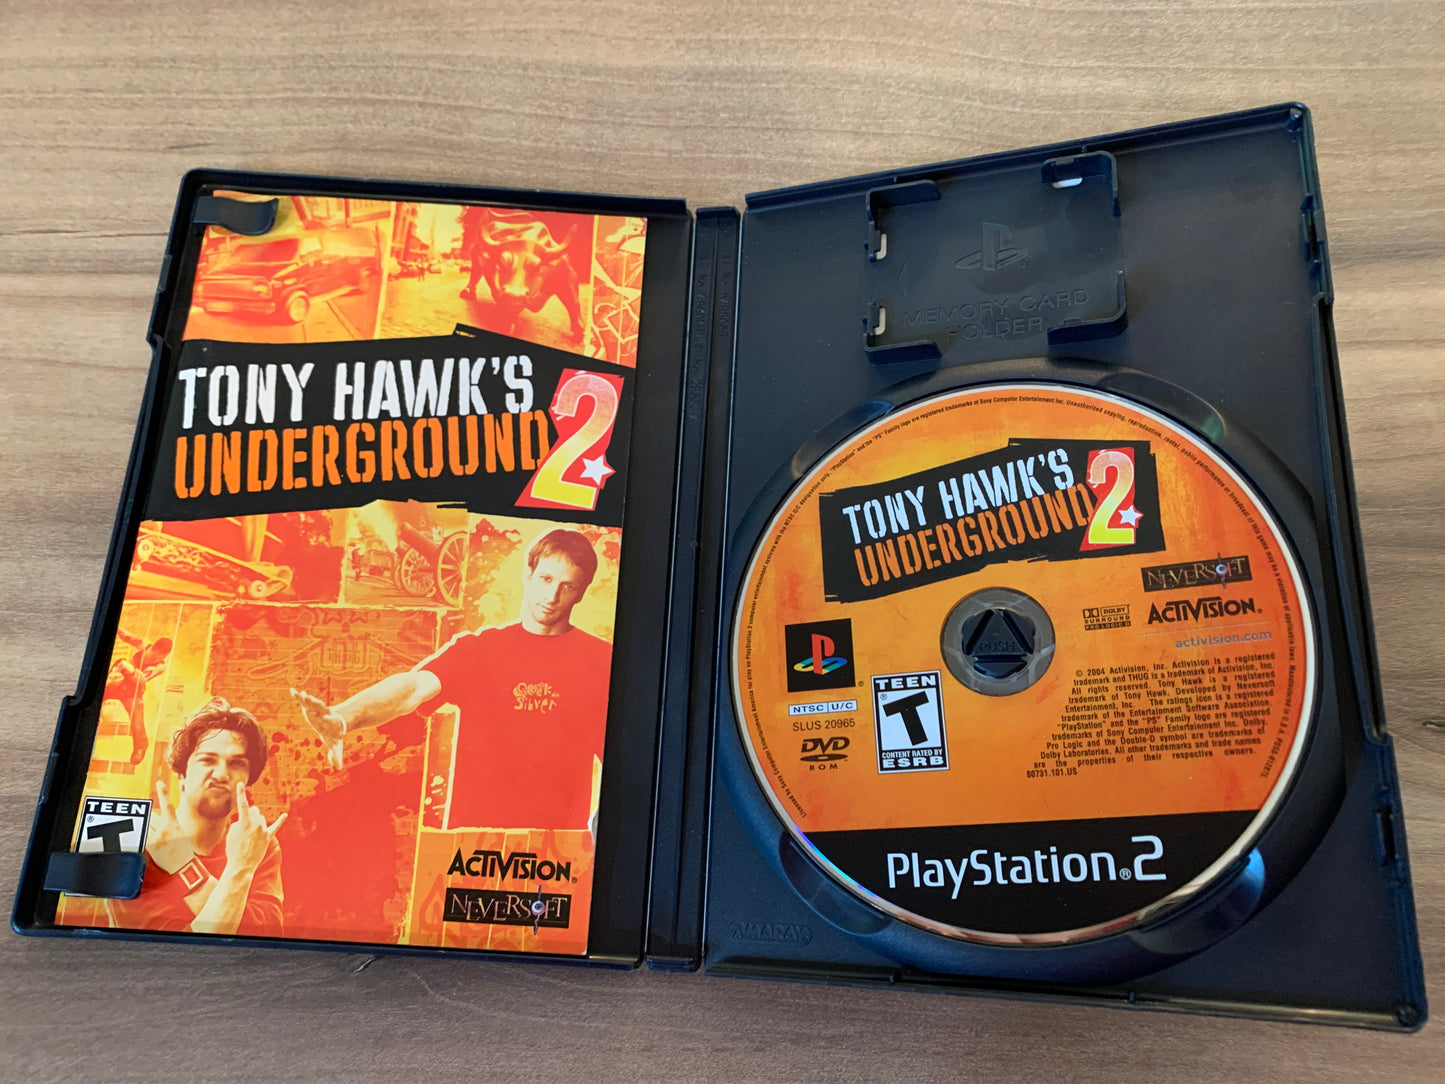 SONY PLAYSTATiON 2 [PS2] | TONY HAWKS UNDERGROUND 2